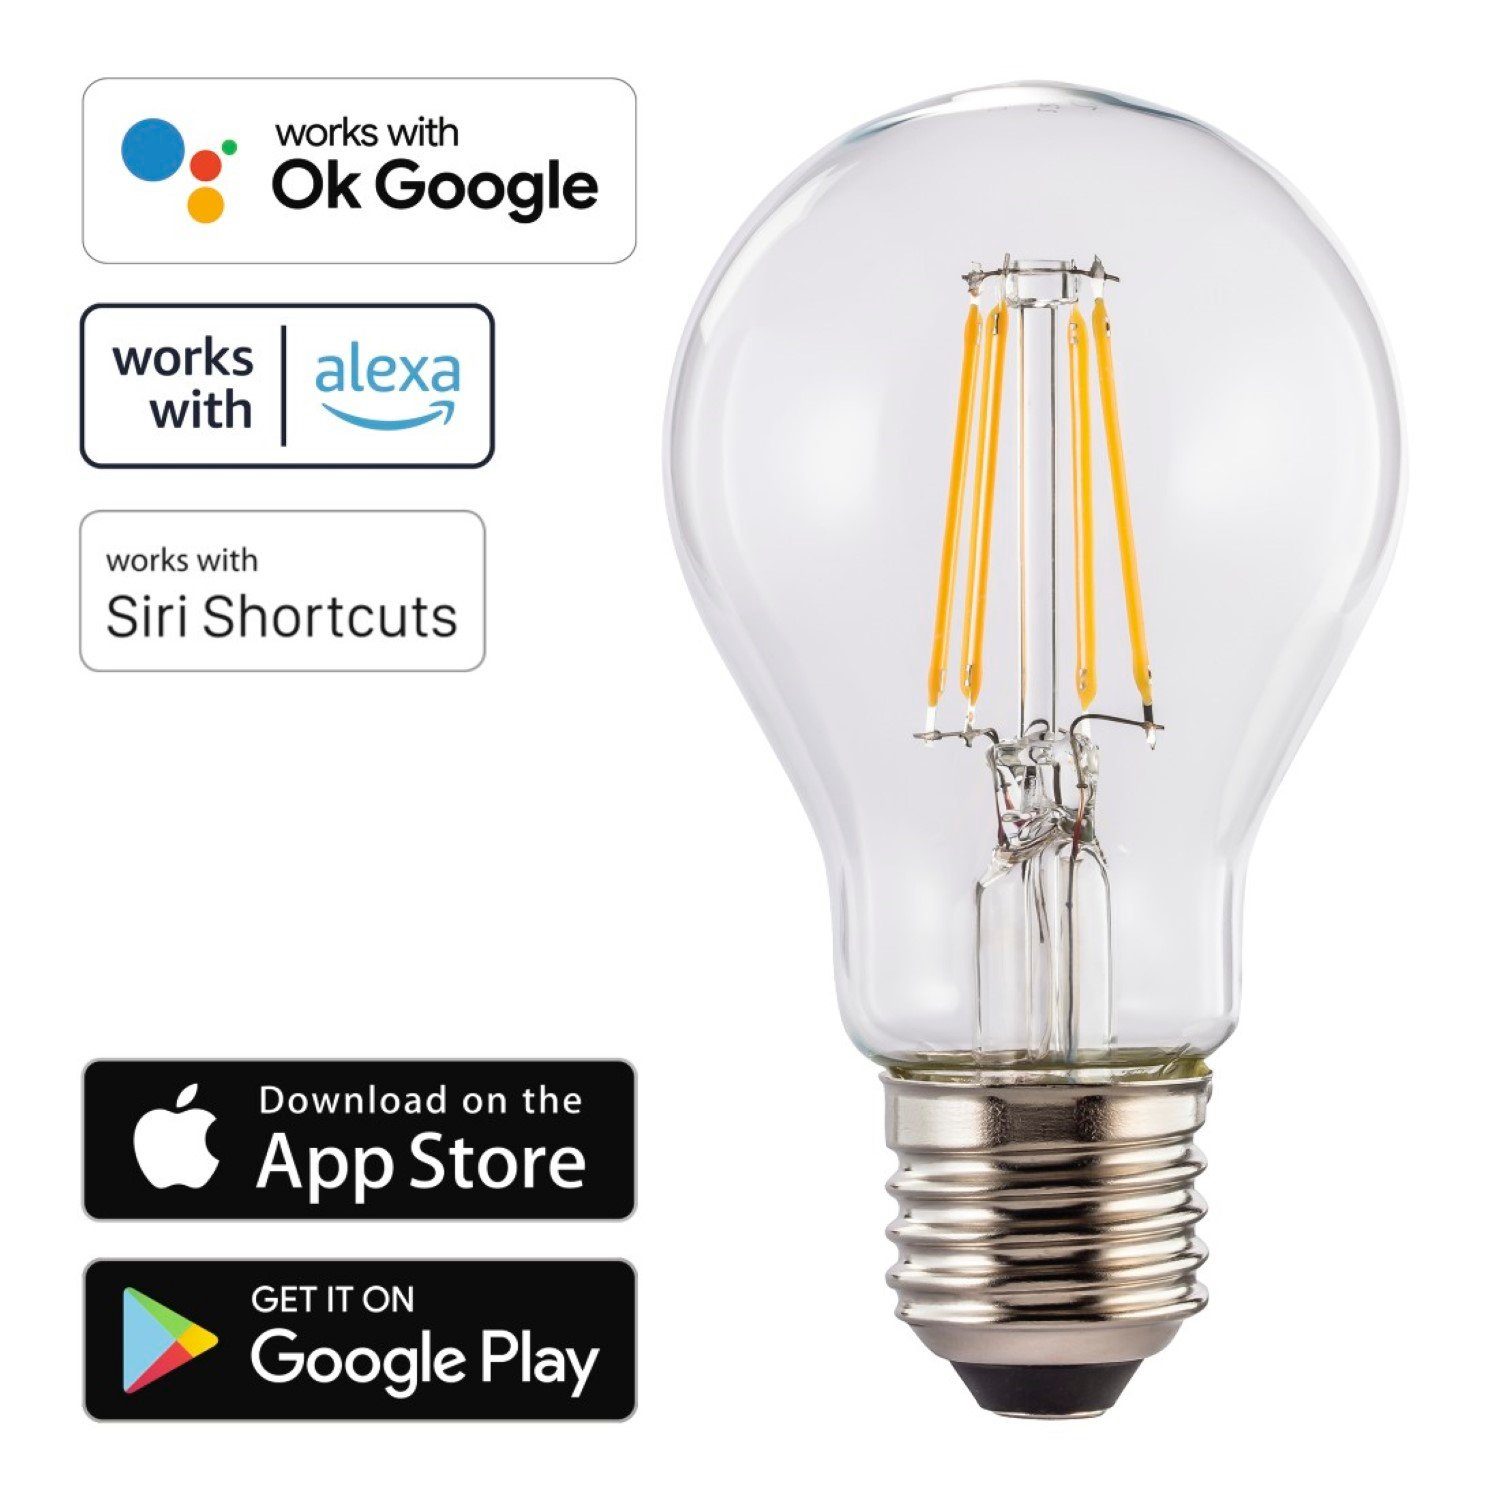 Hama Hängeleuchten WLAN LED-Lampe E27 7W 60W Retro Birne, LED wechselbar,  Tageslichtweiß, Filament Glühbirne, WiFi Verbindung, 7W = 60W, Smart Home,  App-Steuerung auch Sprachsteuerung passend für Amazon Alexa und Ok Google  Assistent